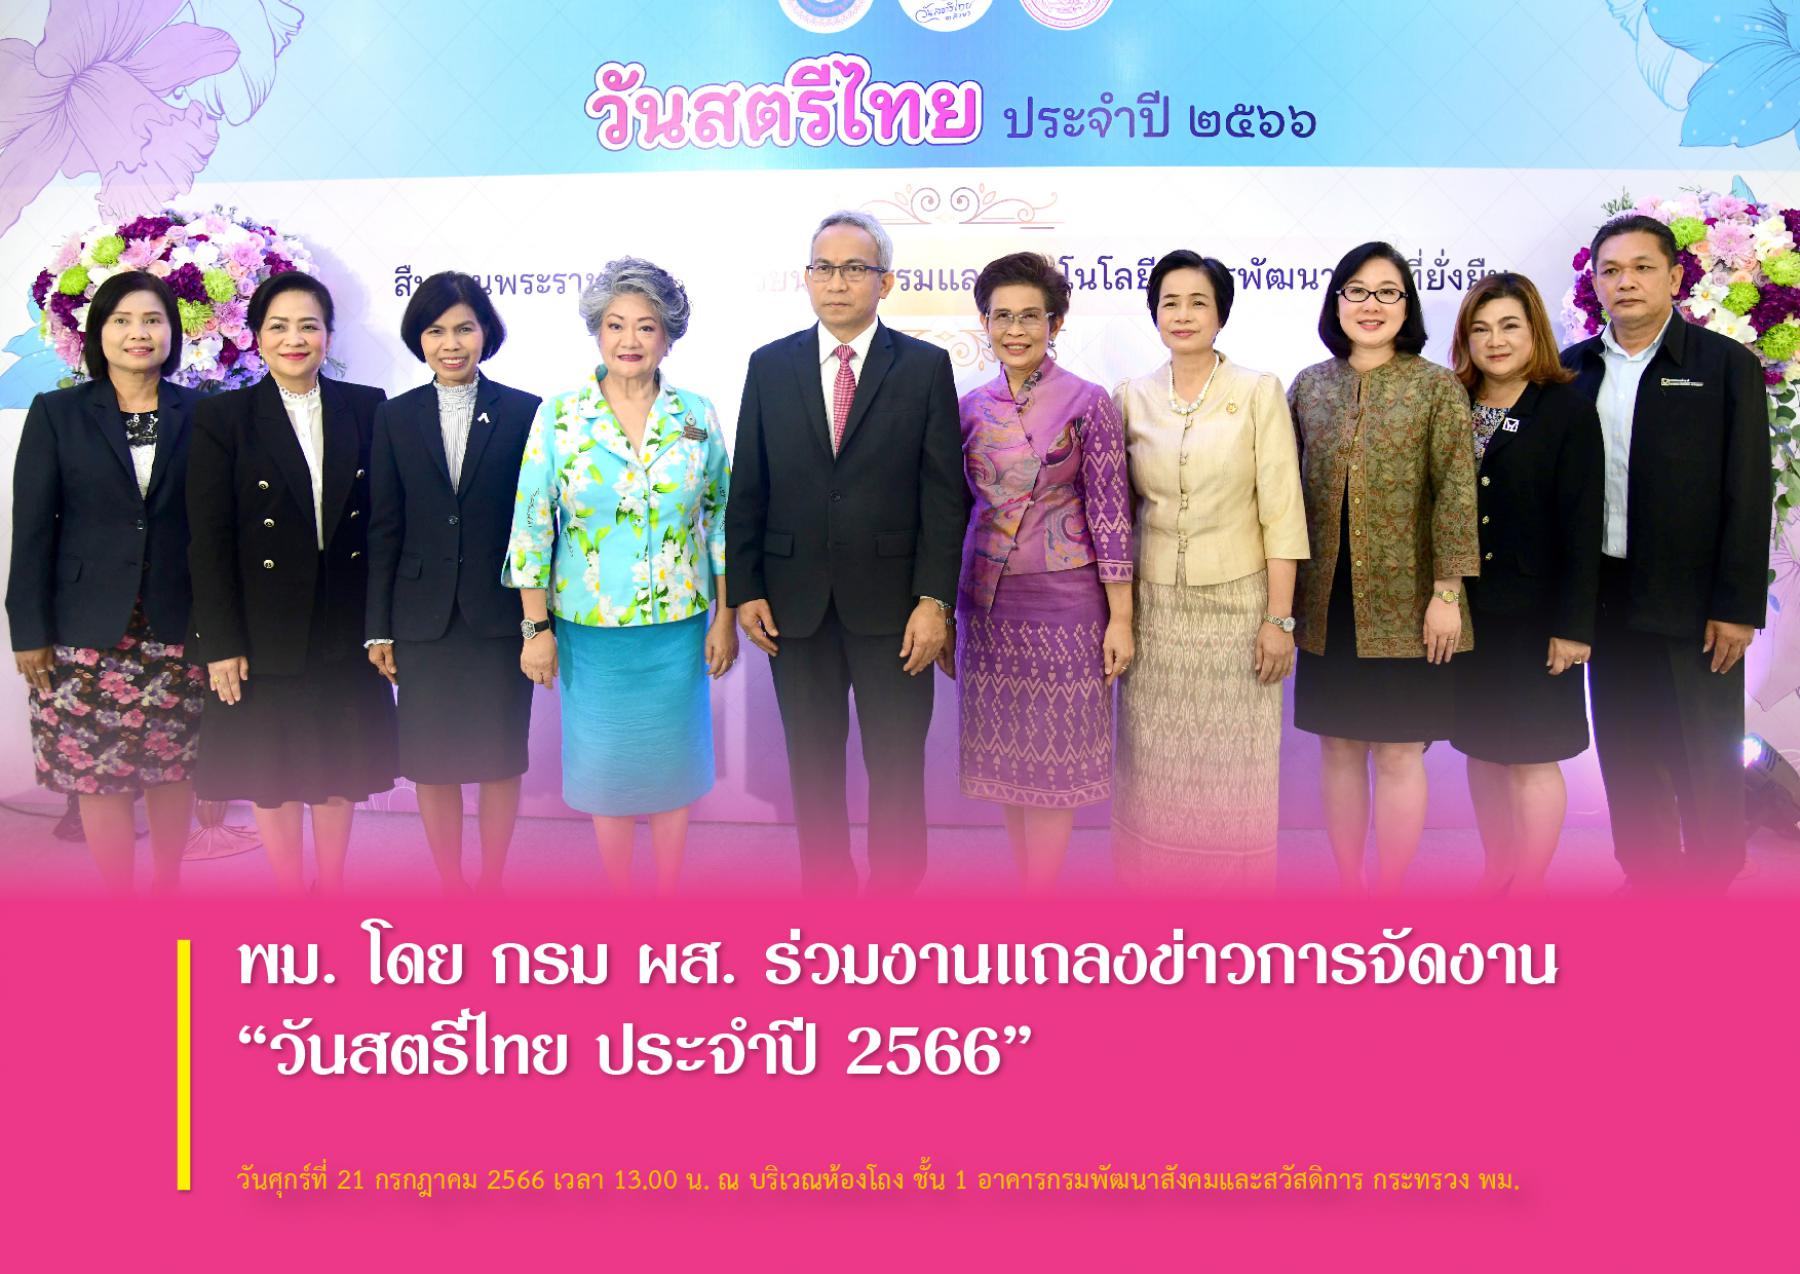 พม. โดย กรม ผส. ร่วมงานแถลงข่าวการจัดงาน “วันสตรีไทย ประจำปี 2566” 